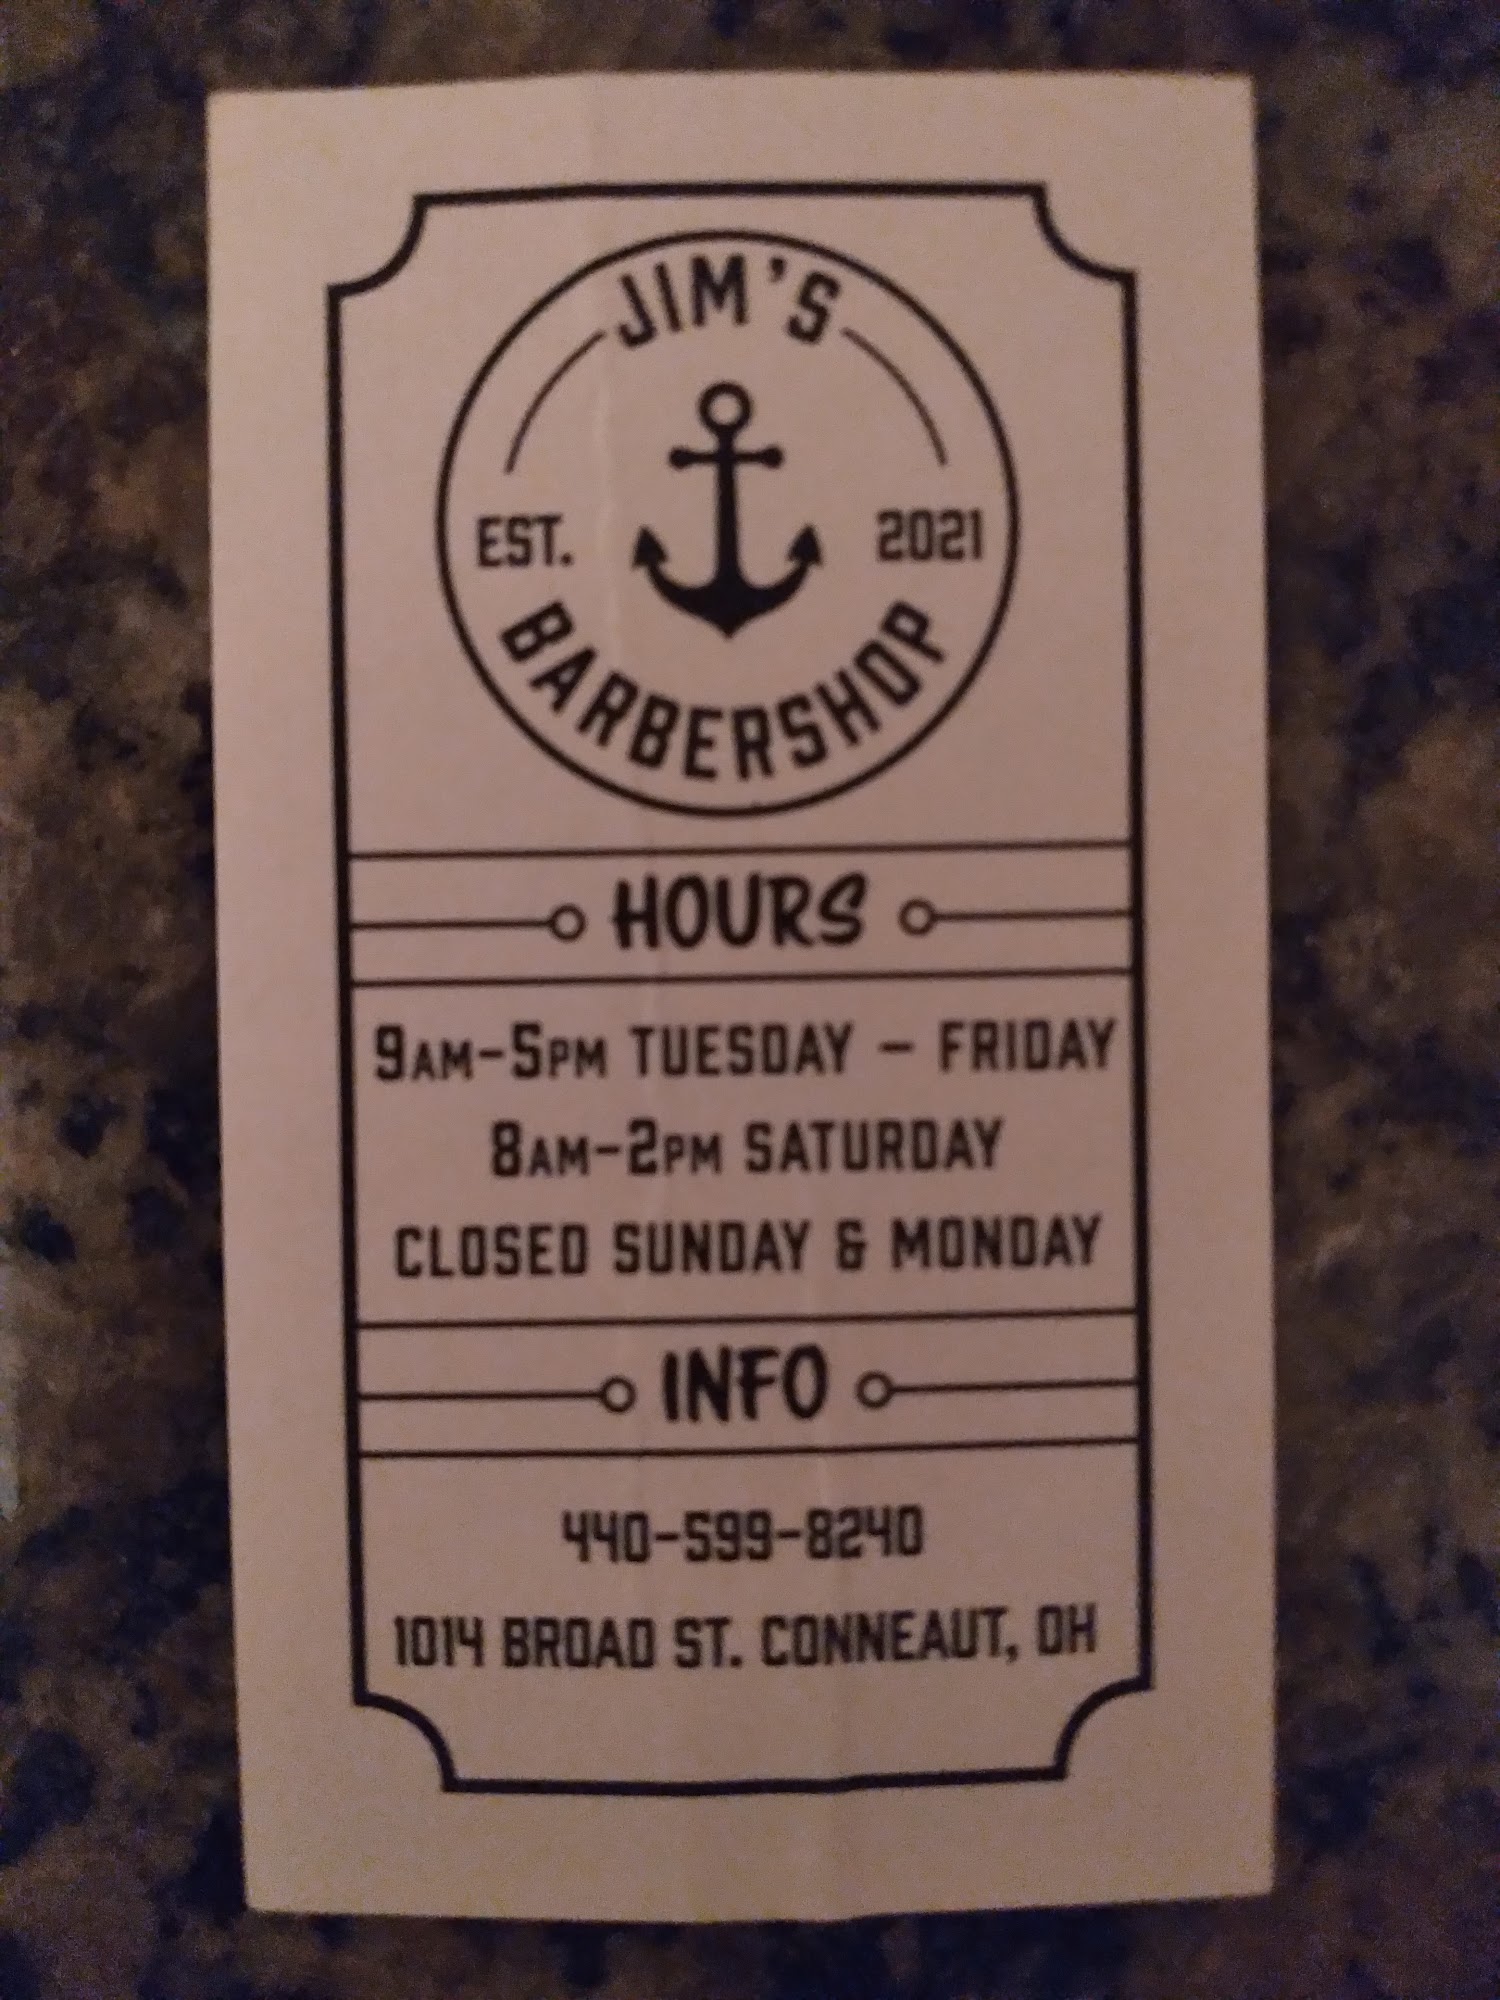 Jim's Barber Shop 1014 Broad St, Conneaut Ohio 44030